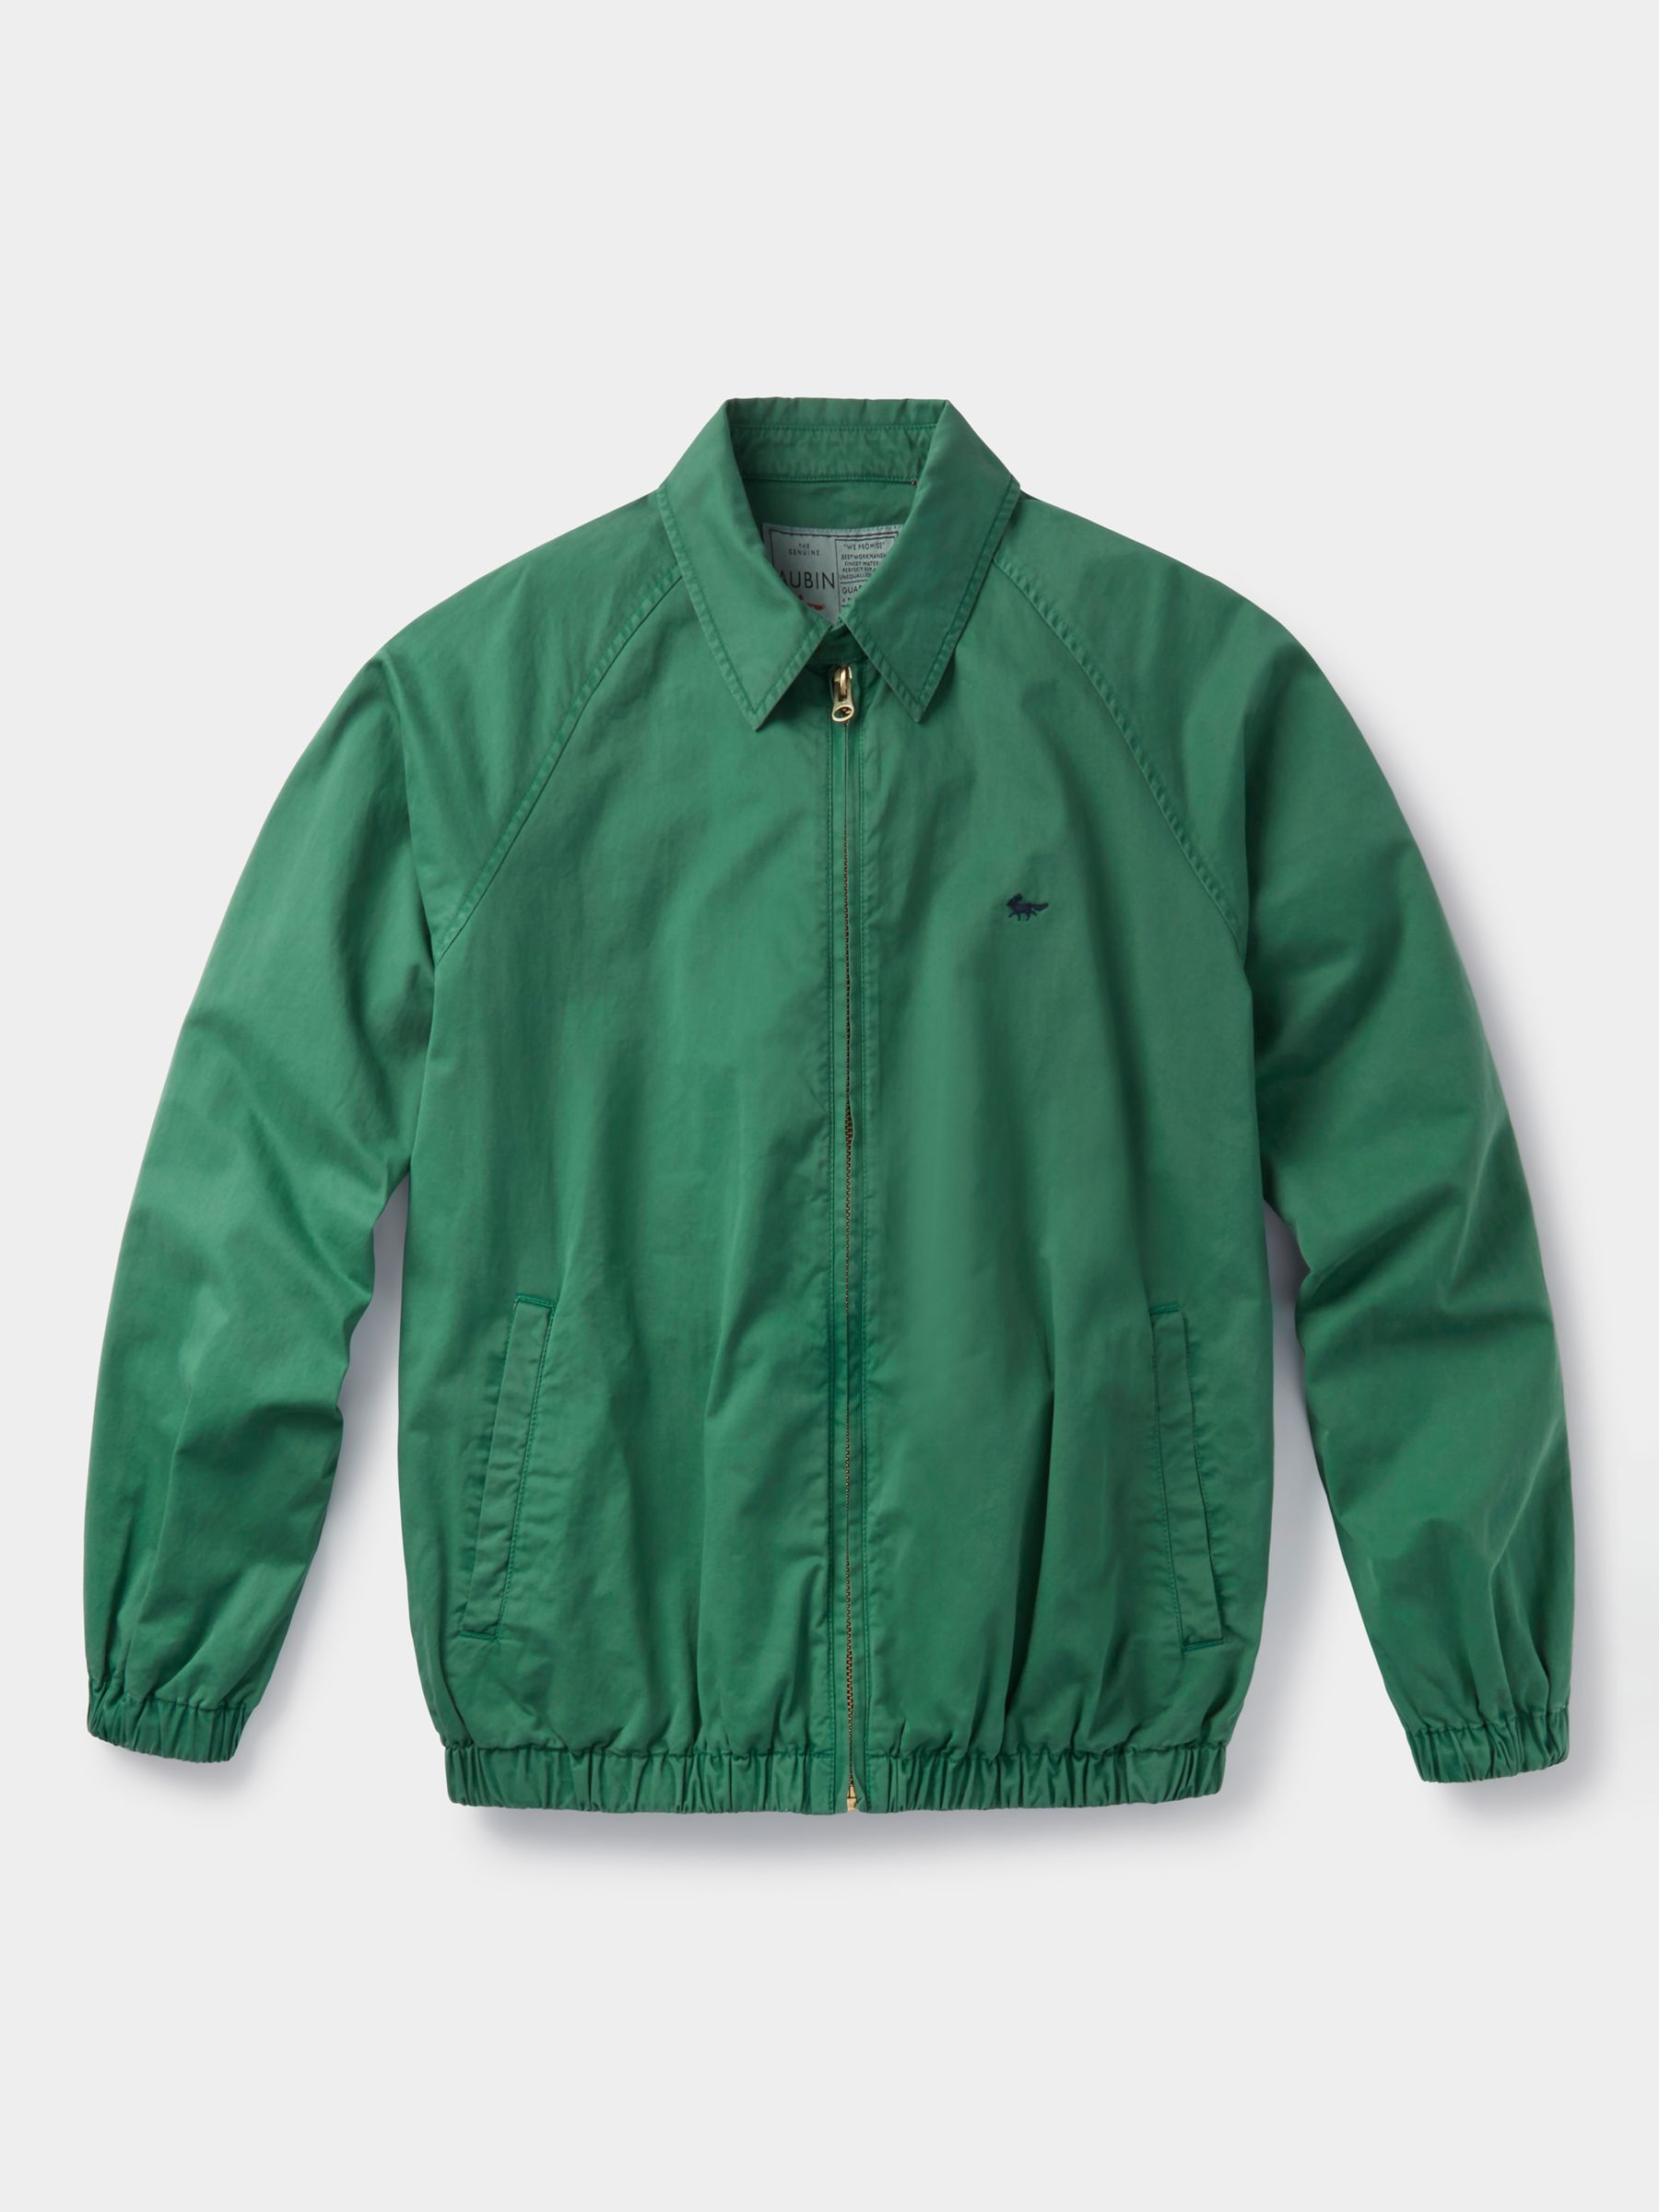 Aubin Stow Cotton Twill Harrington Jacket, Leaf, S